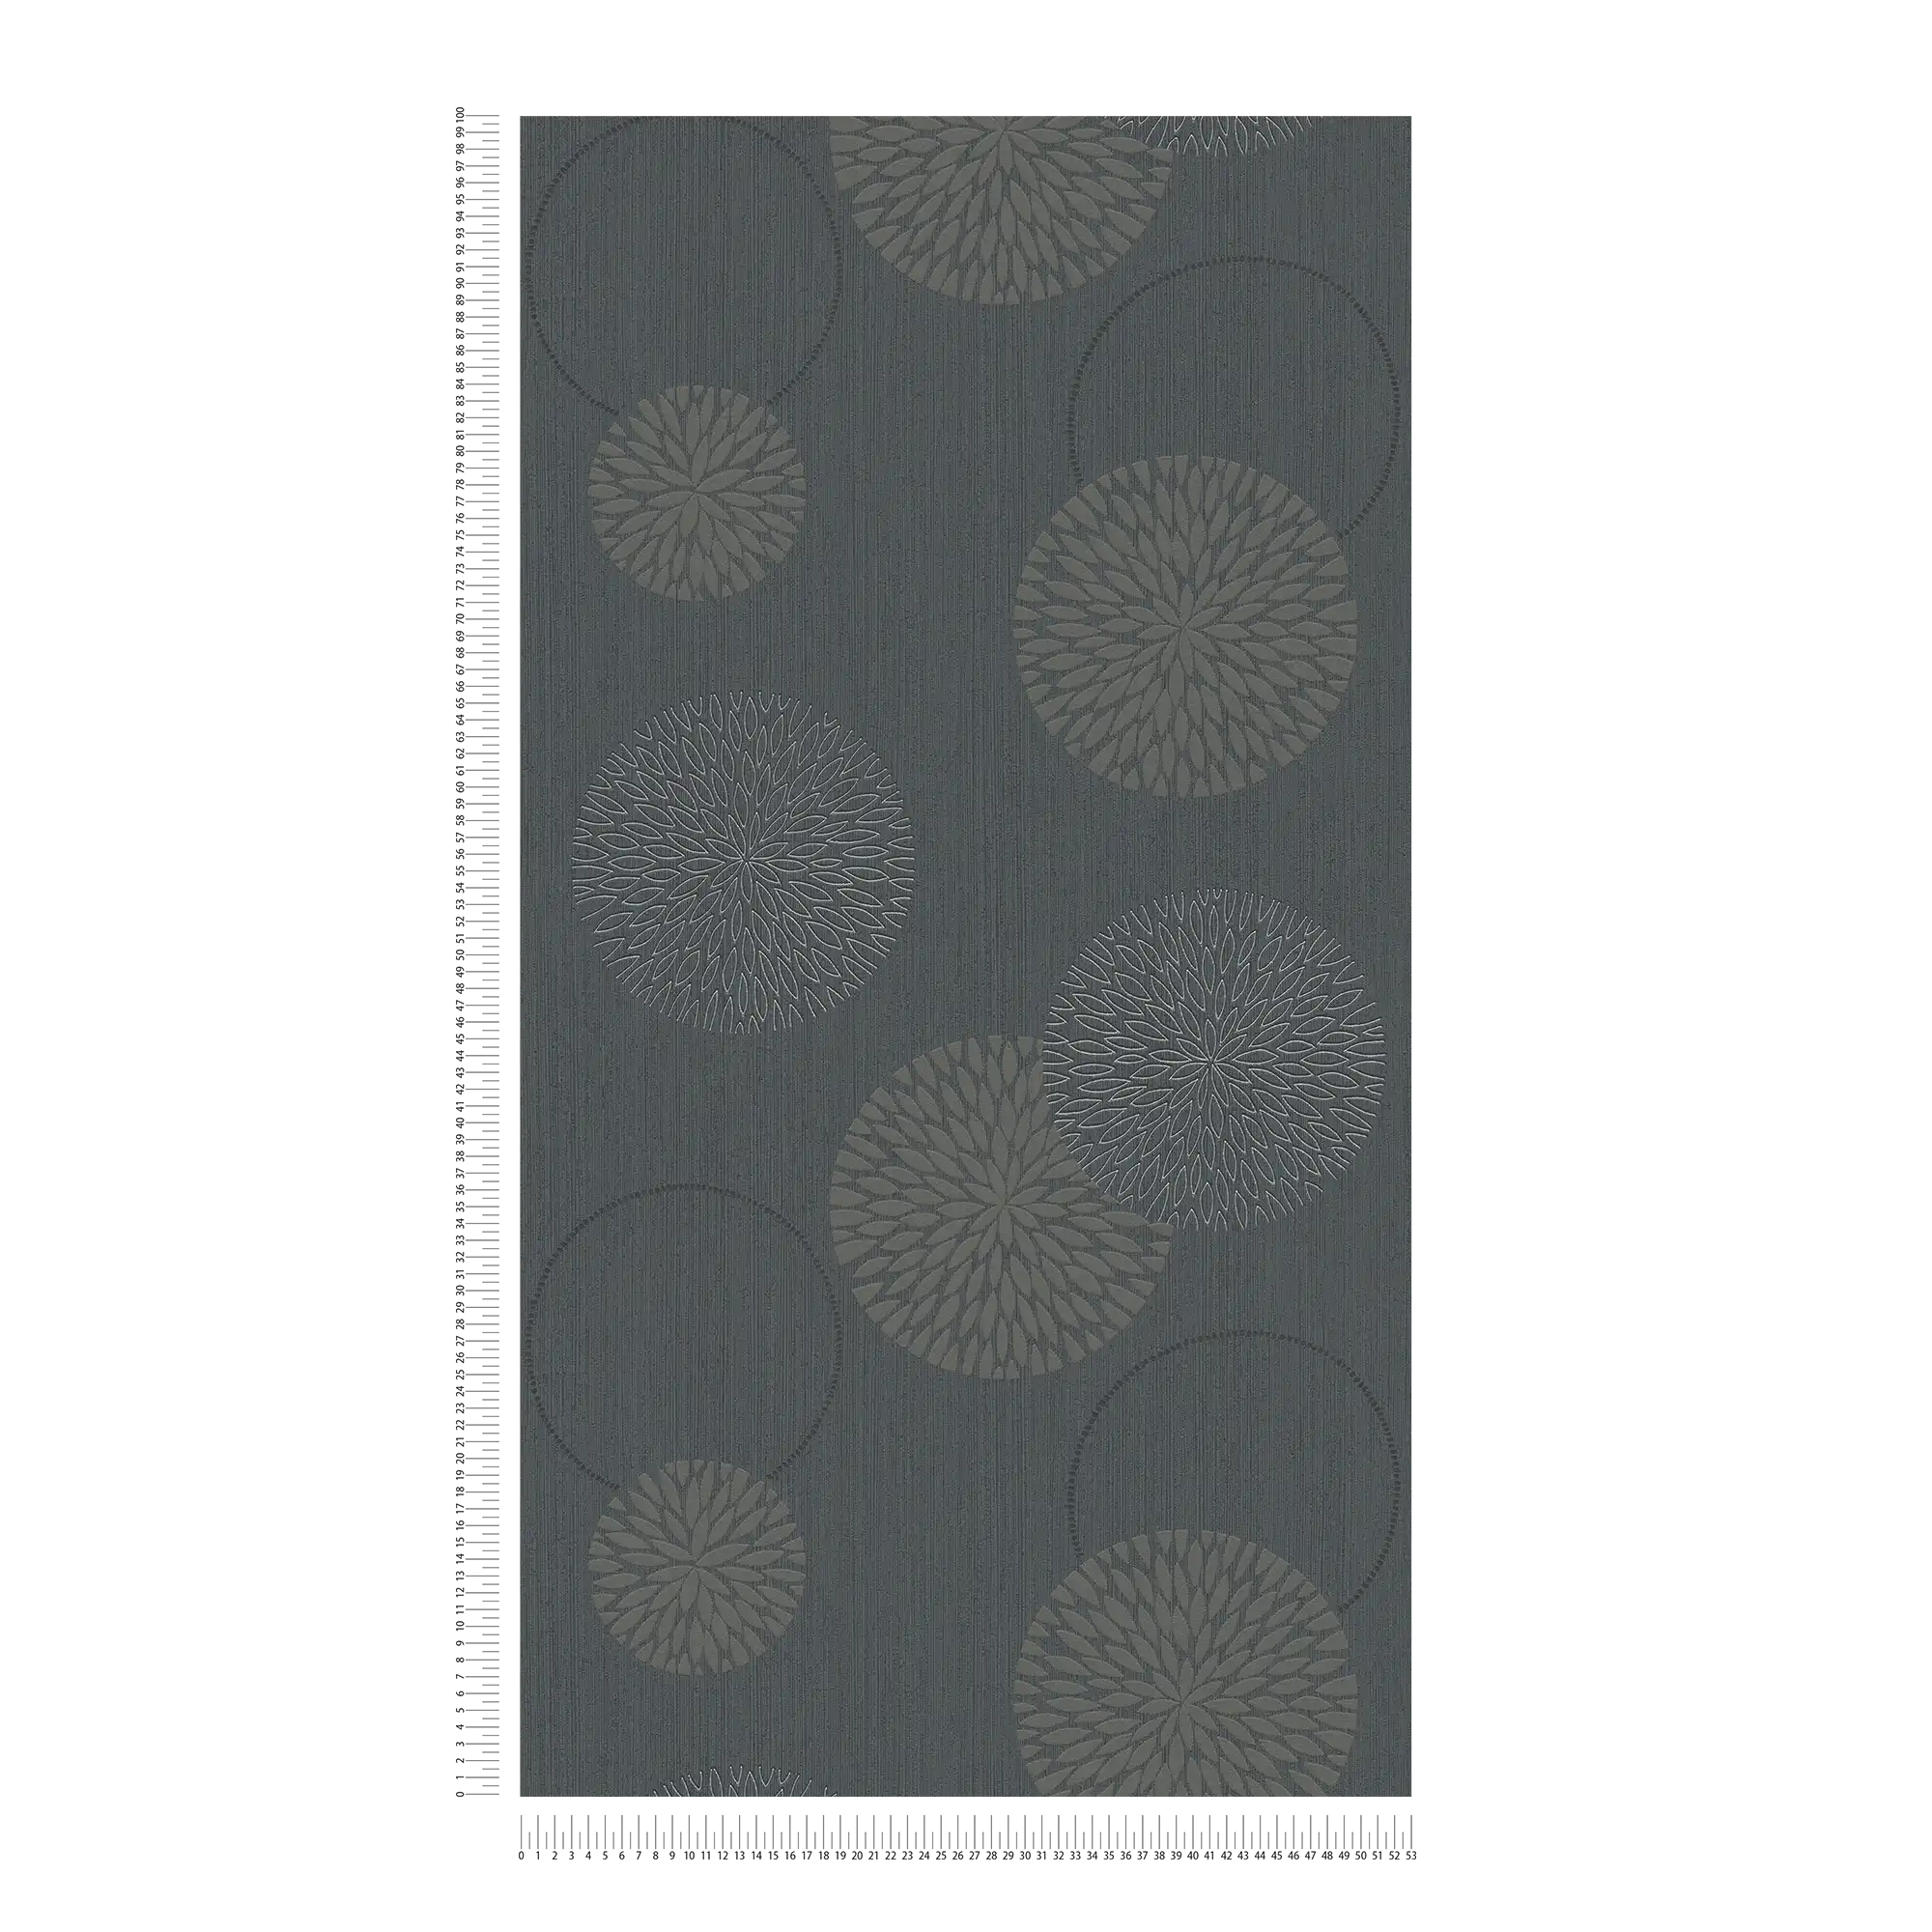             Papier peint intissé fleurs design abstrait - gris, noir
        